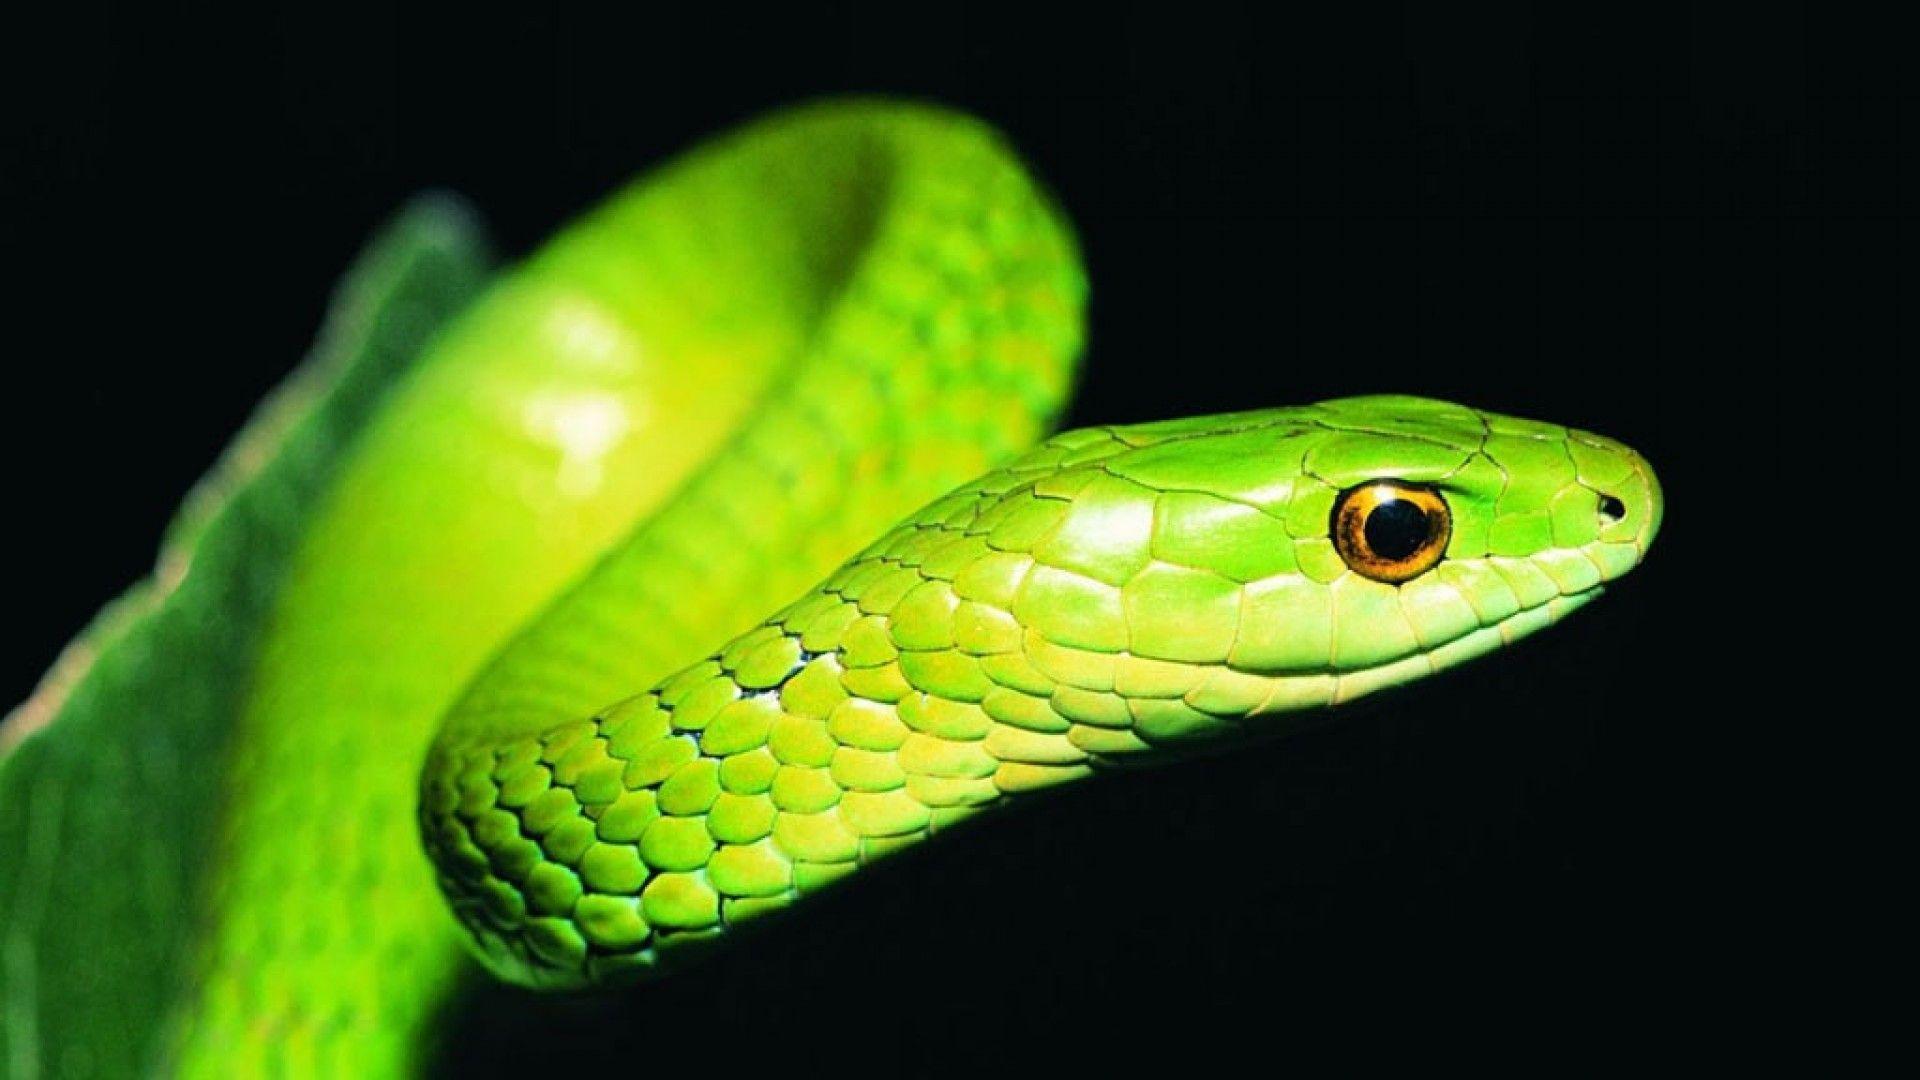 Image result for snake head on. Snake wallpaper, Snake, Viper snake